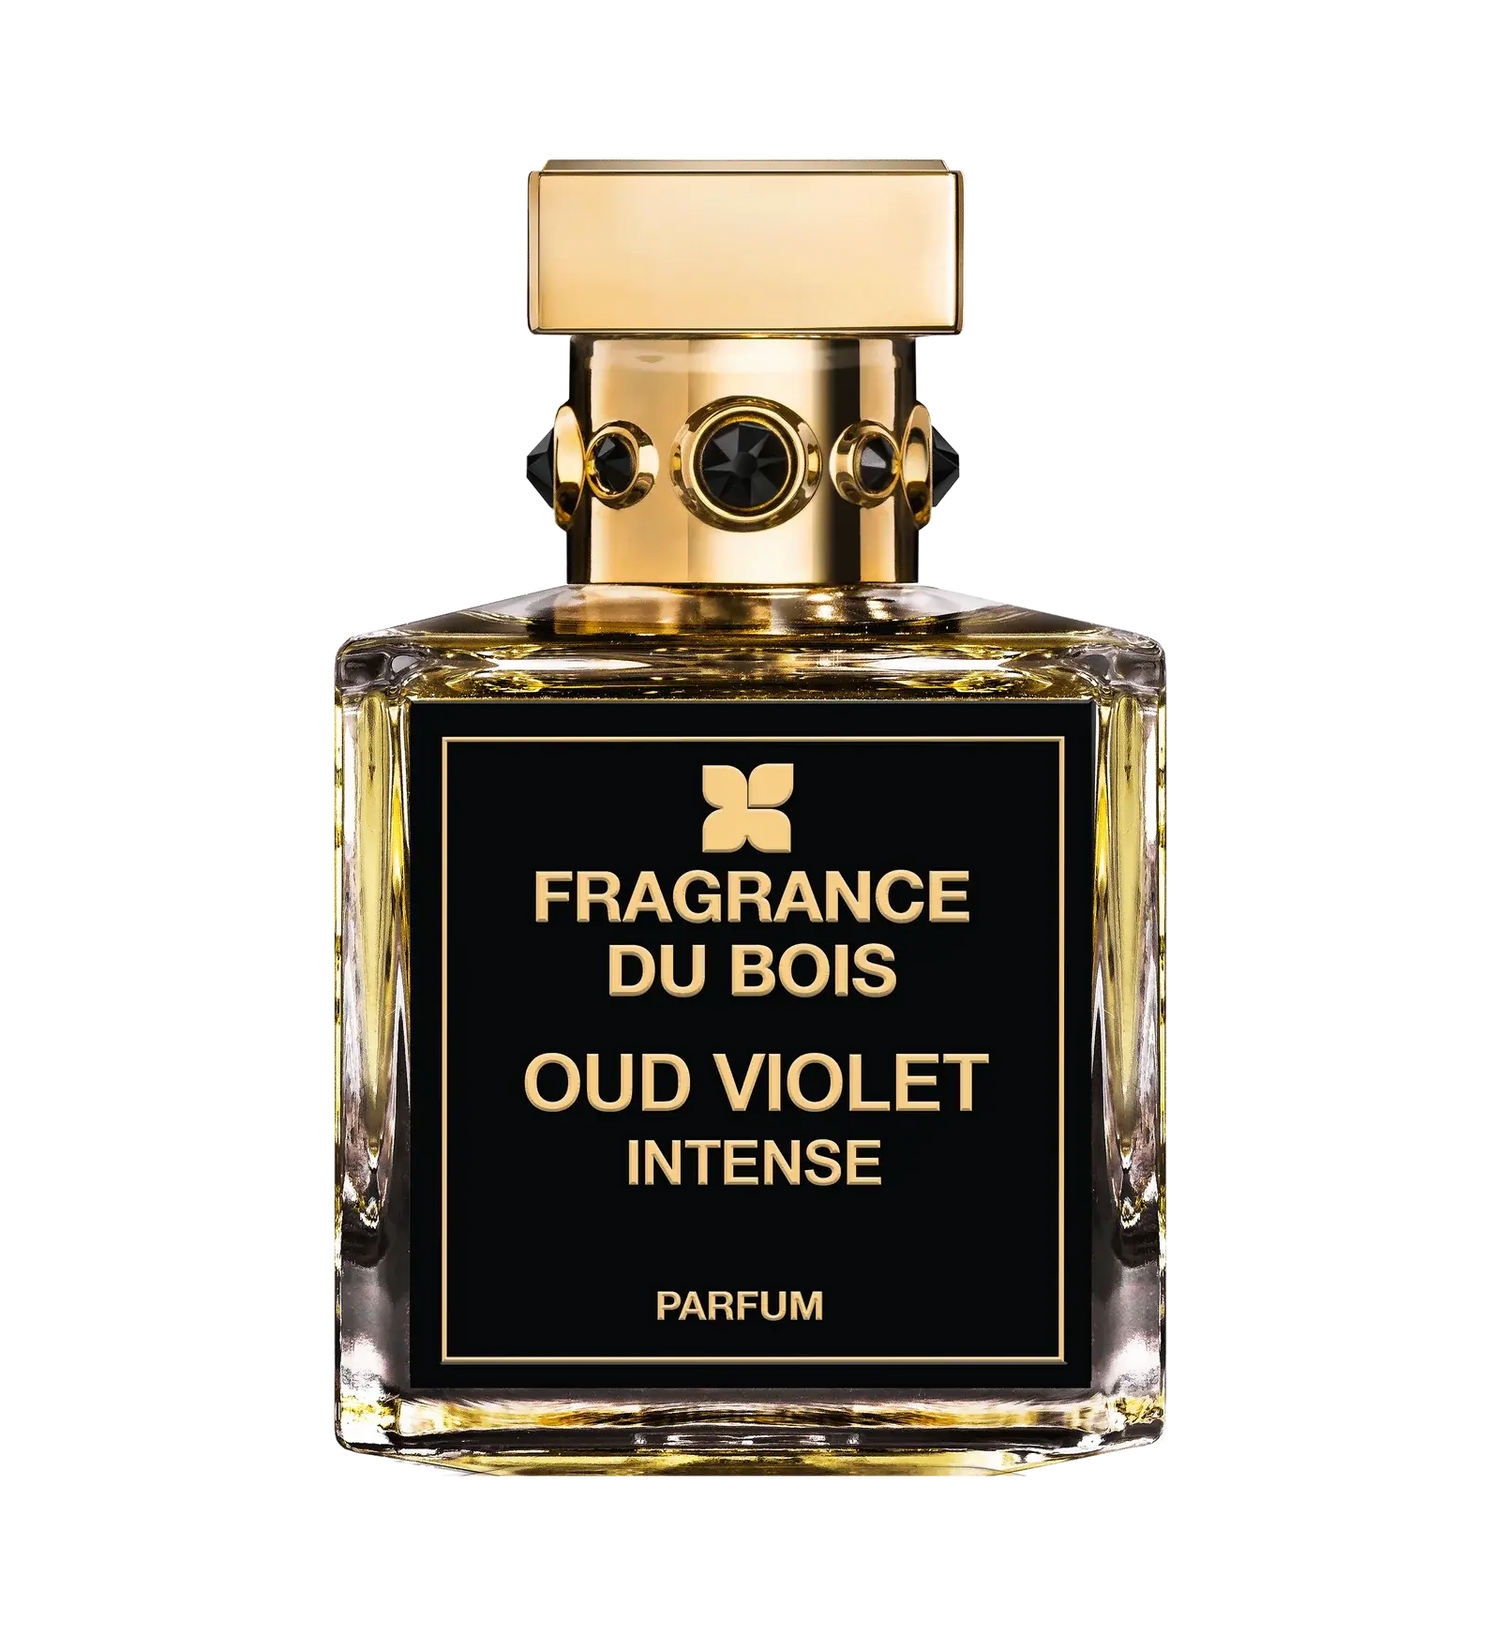 Fragrance du bois Fragrance du Bois Oud Violet Intense Edp – 100 ml